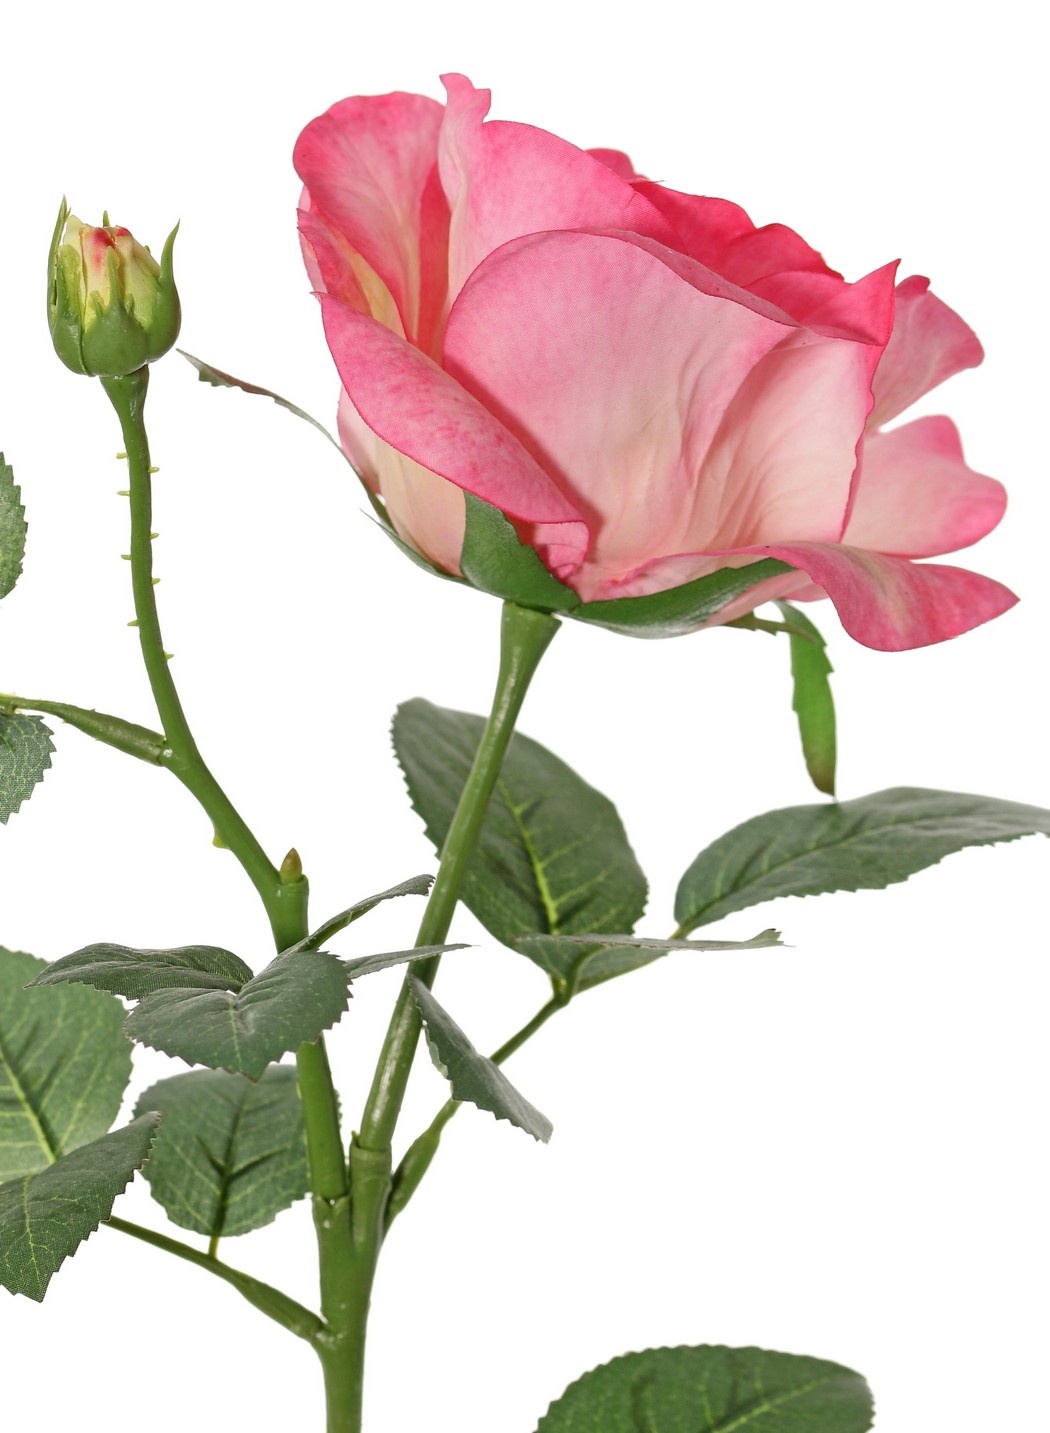 Rose 'Garden Art' with 1 flower Ø 11 cm, 1 bud Ø 2 cm & 20 leaves, 65 cm